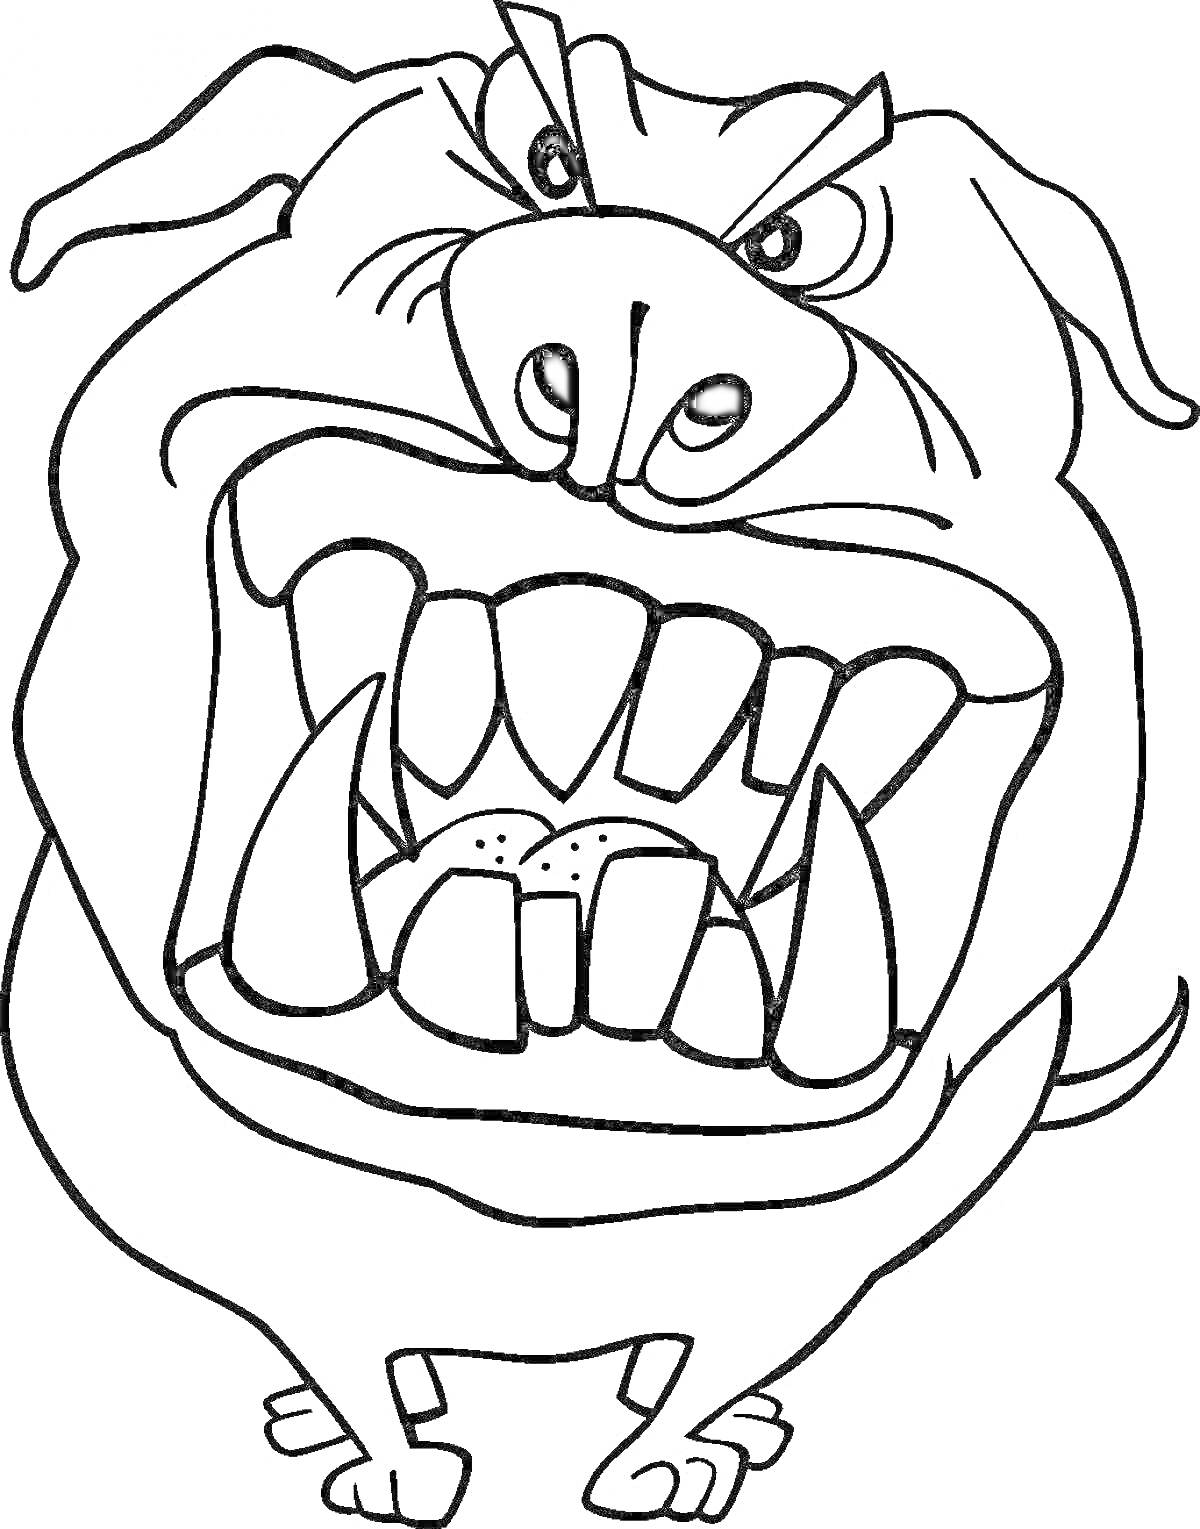 Раскраска Злой пёс с большими клыками, комически сердитый